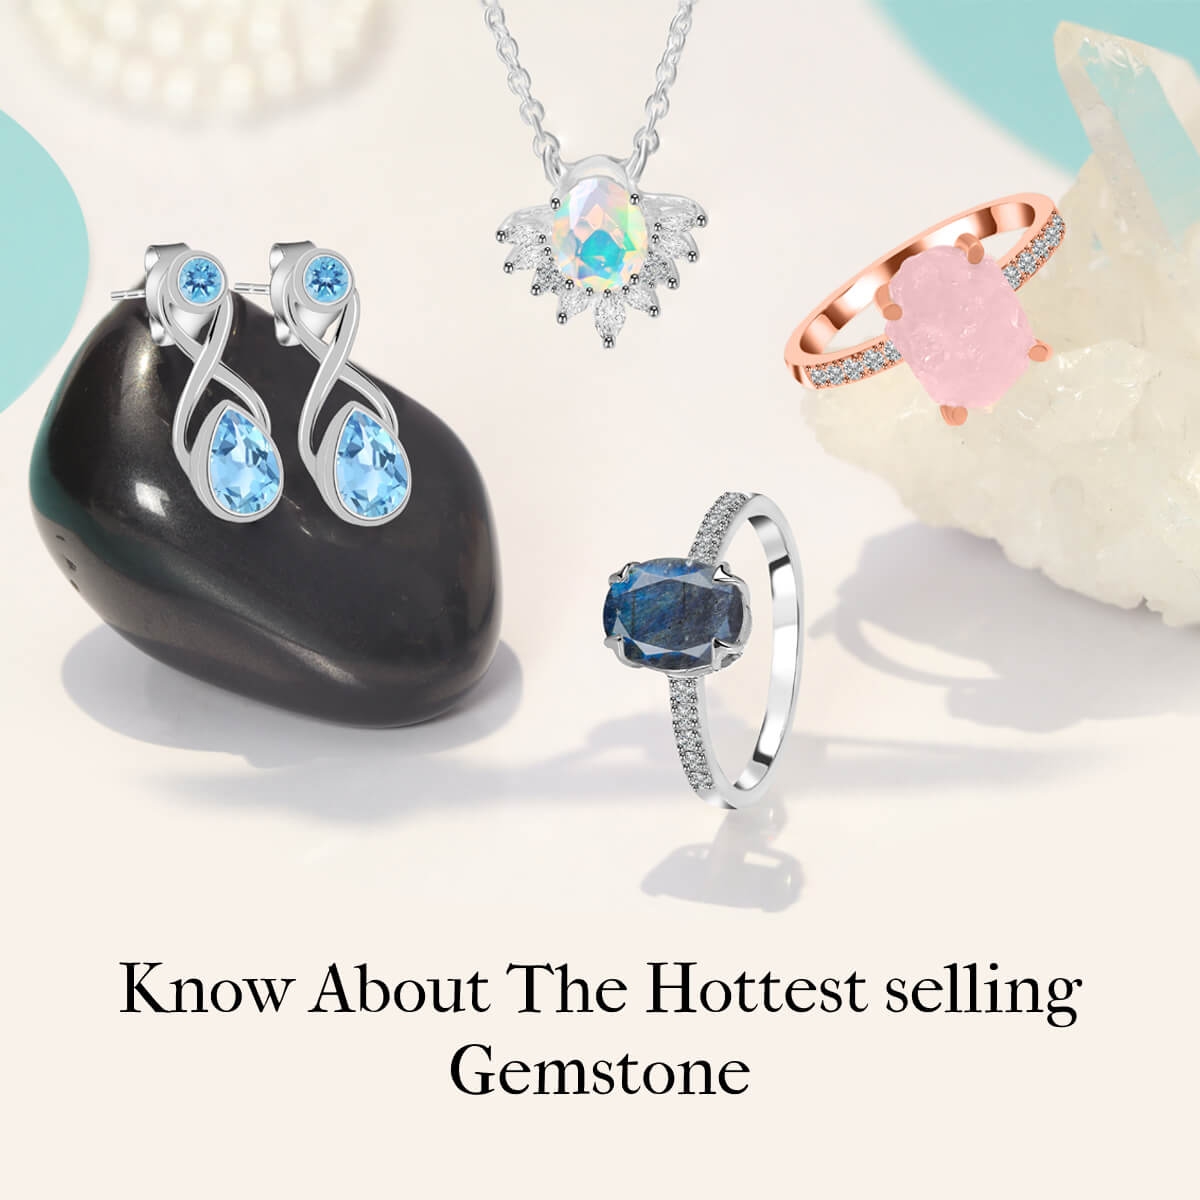 Trending Gemstone Rings